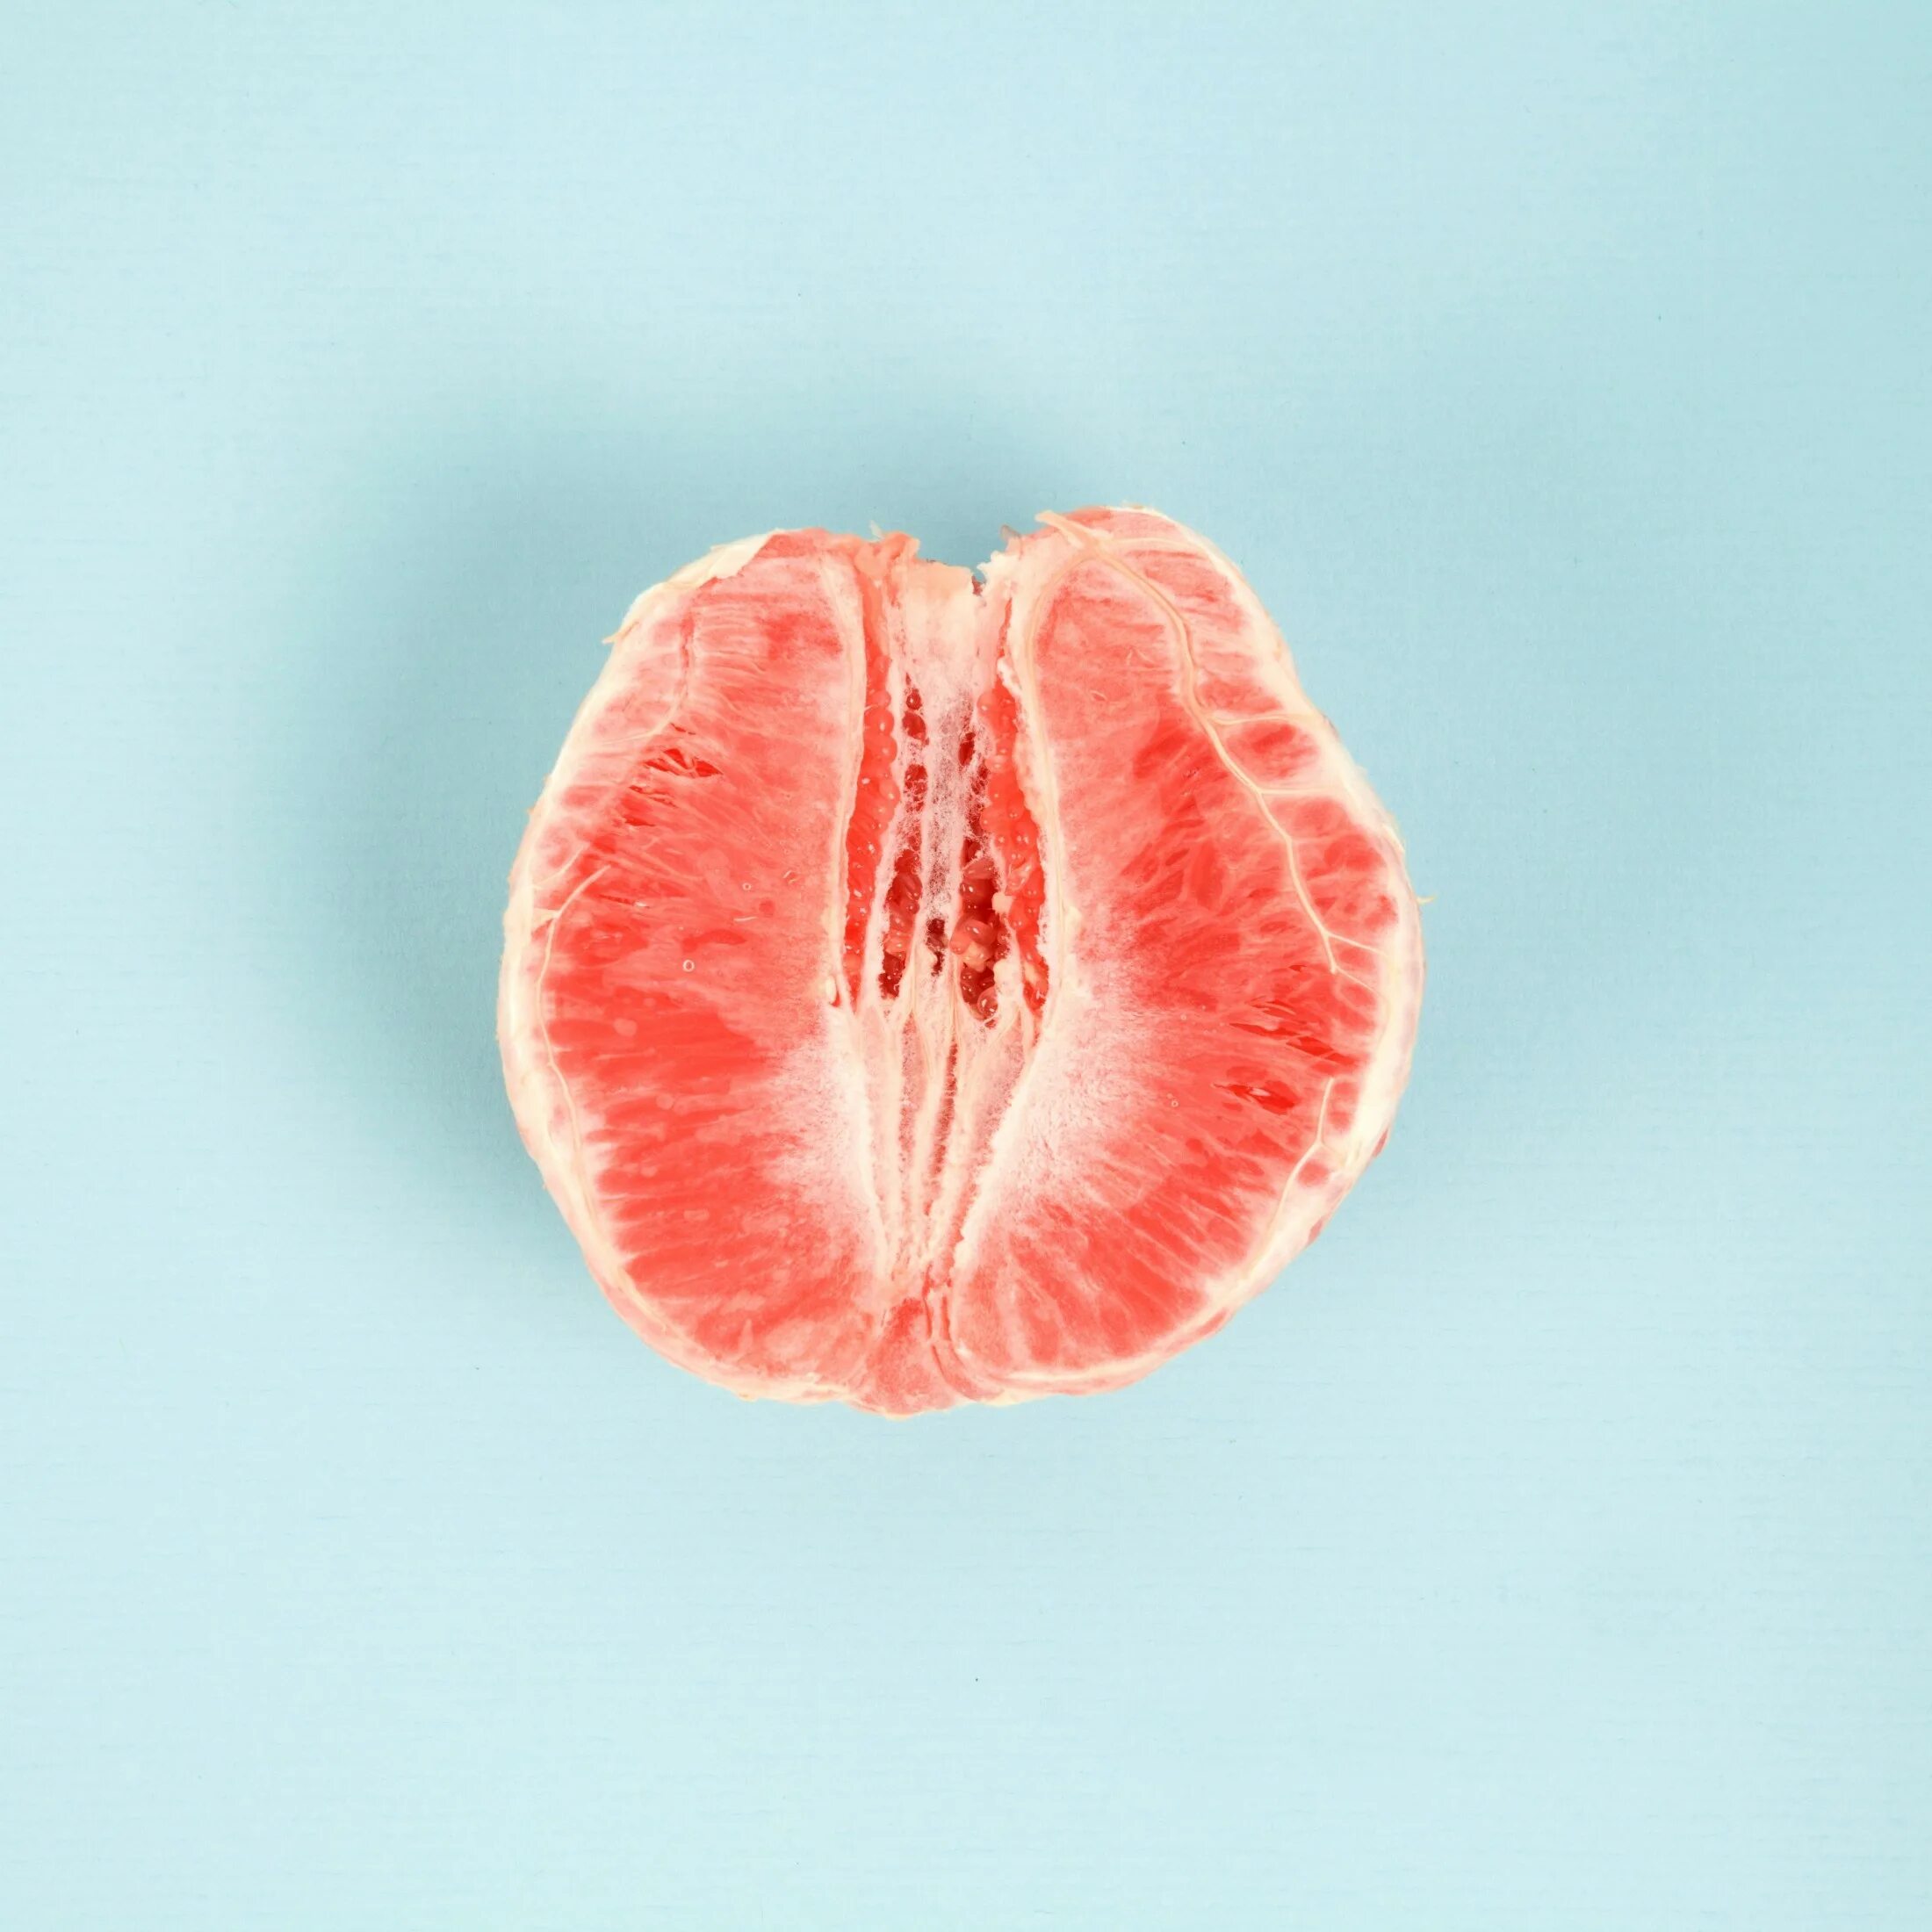 Женские малые половые губы. Грейпфрут в разрезе. Фрукты похожие на влагалище. Половинка грейпфрута. Фрукт похожий на женские гениталии.